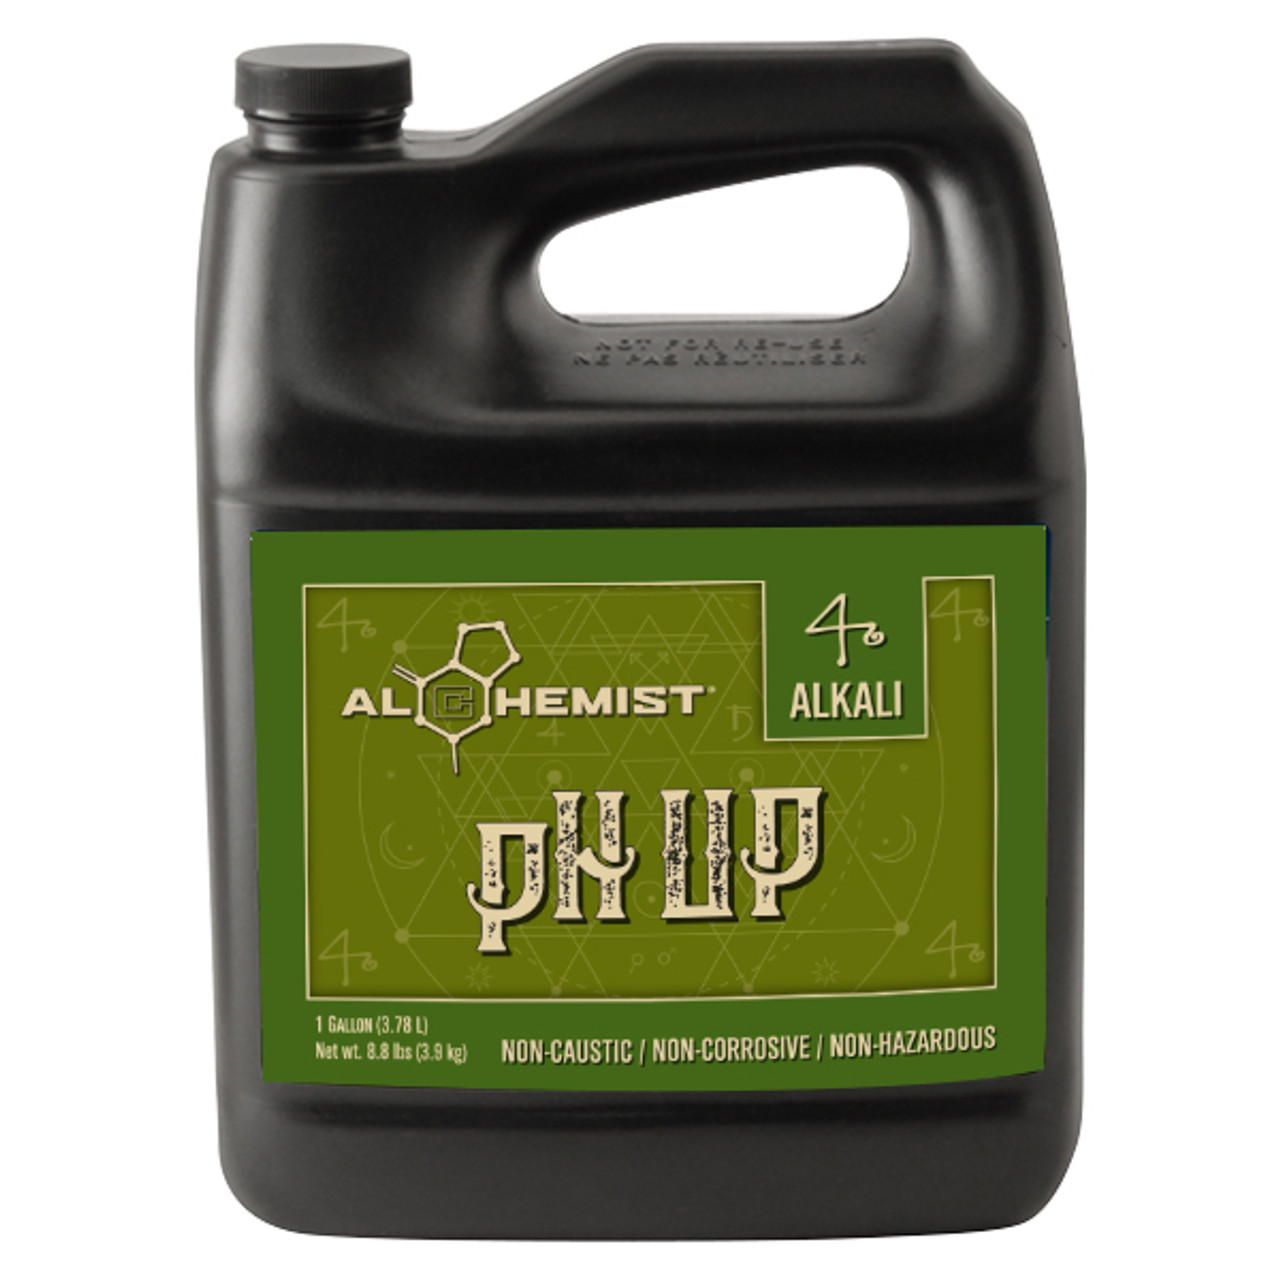 Alchemist pH Up Non-Caustic Gallon 